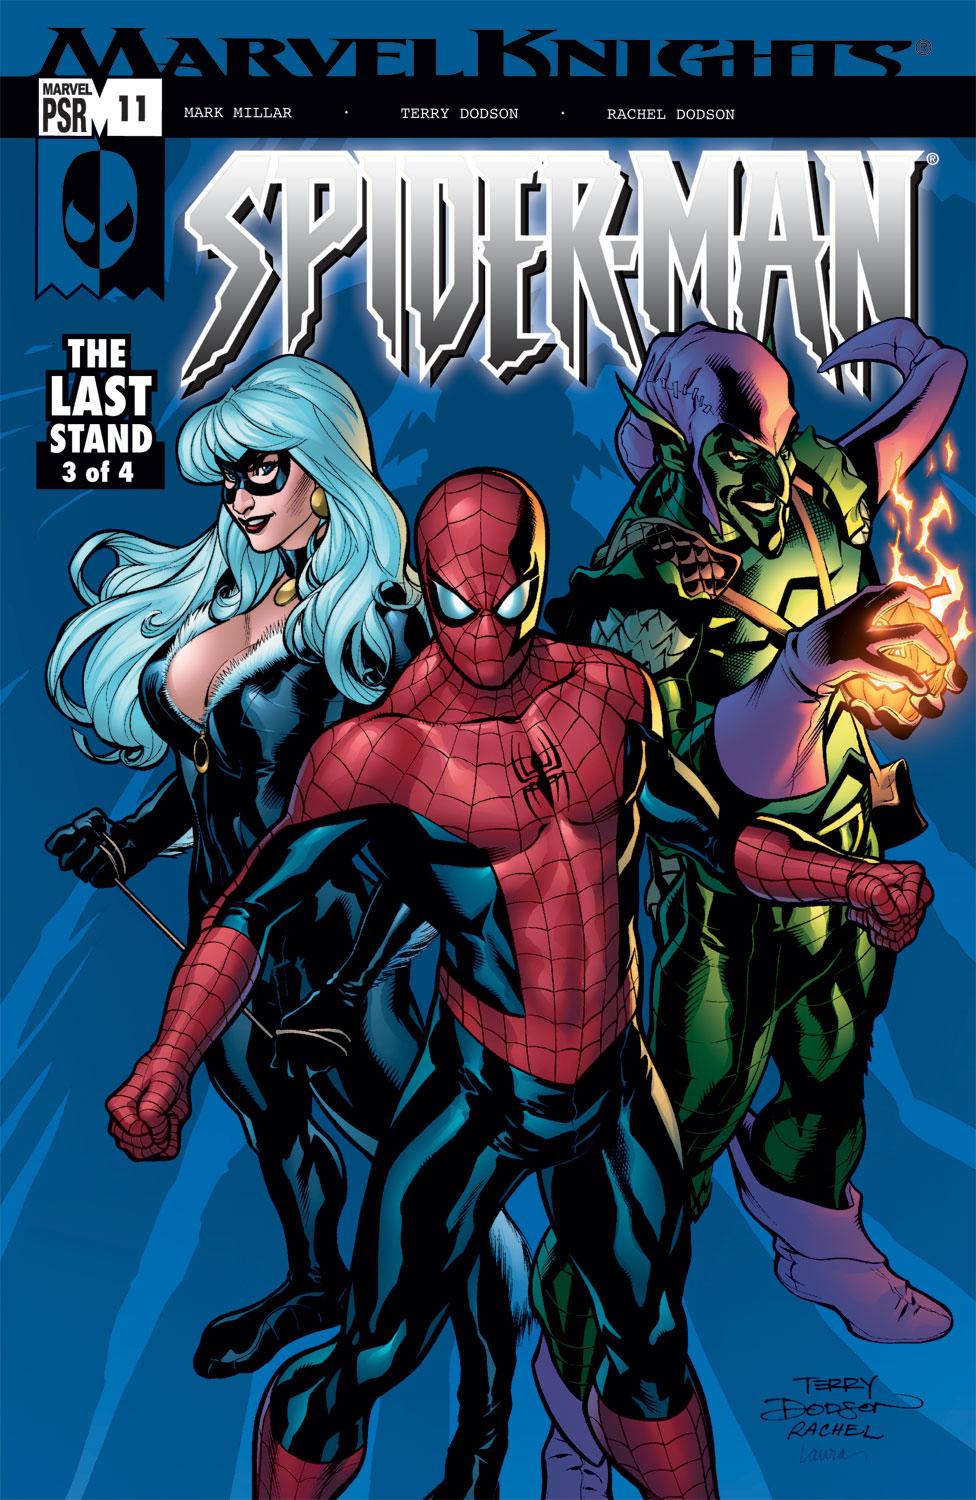 Marvel Knights Spider-Man (2004) #11